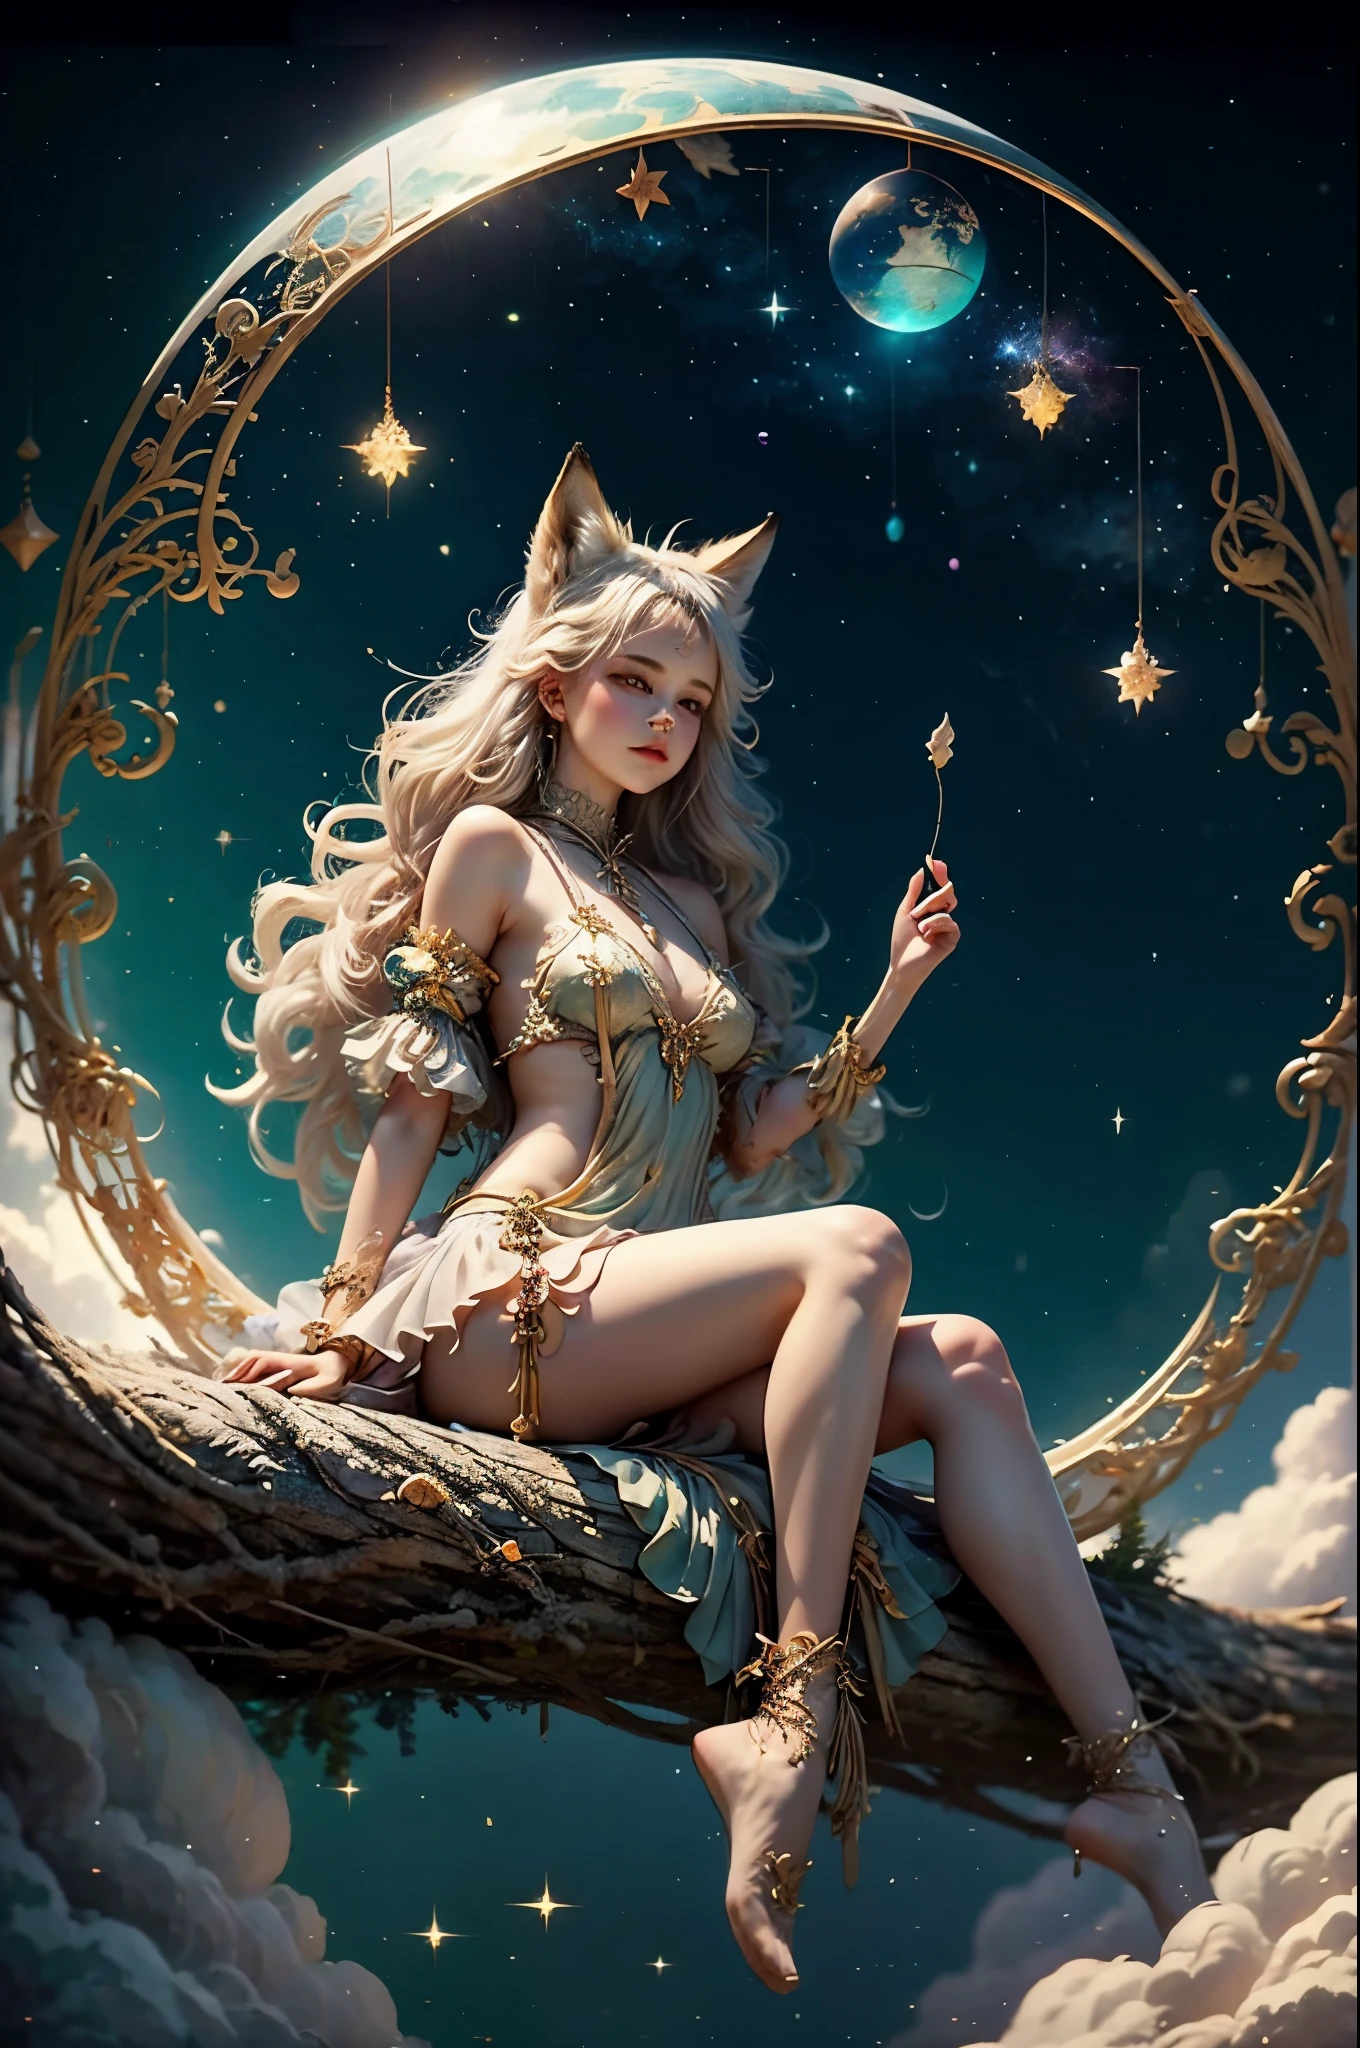 diosa zorro, hermosa chica, Seda,nube,cola de zorro, disfraz de mikko, bosque,piscina,( bokeh ),fantasía 00d,Luna sentada